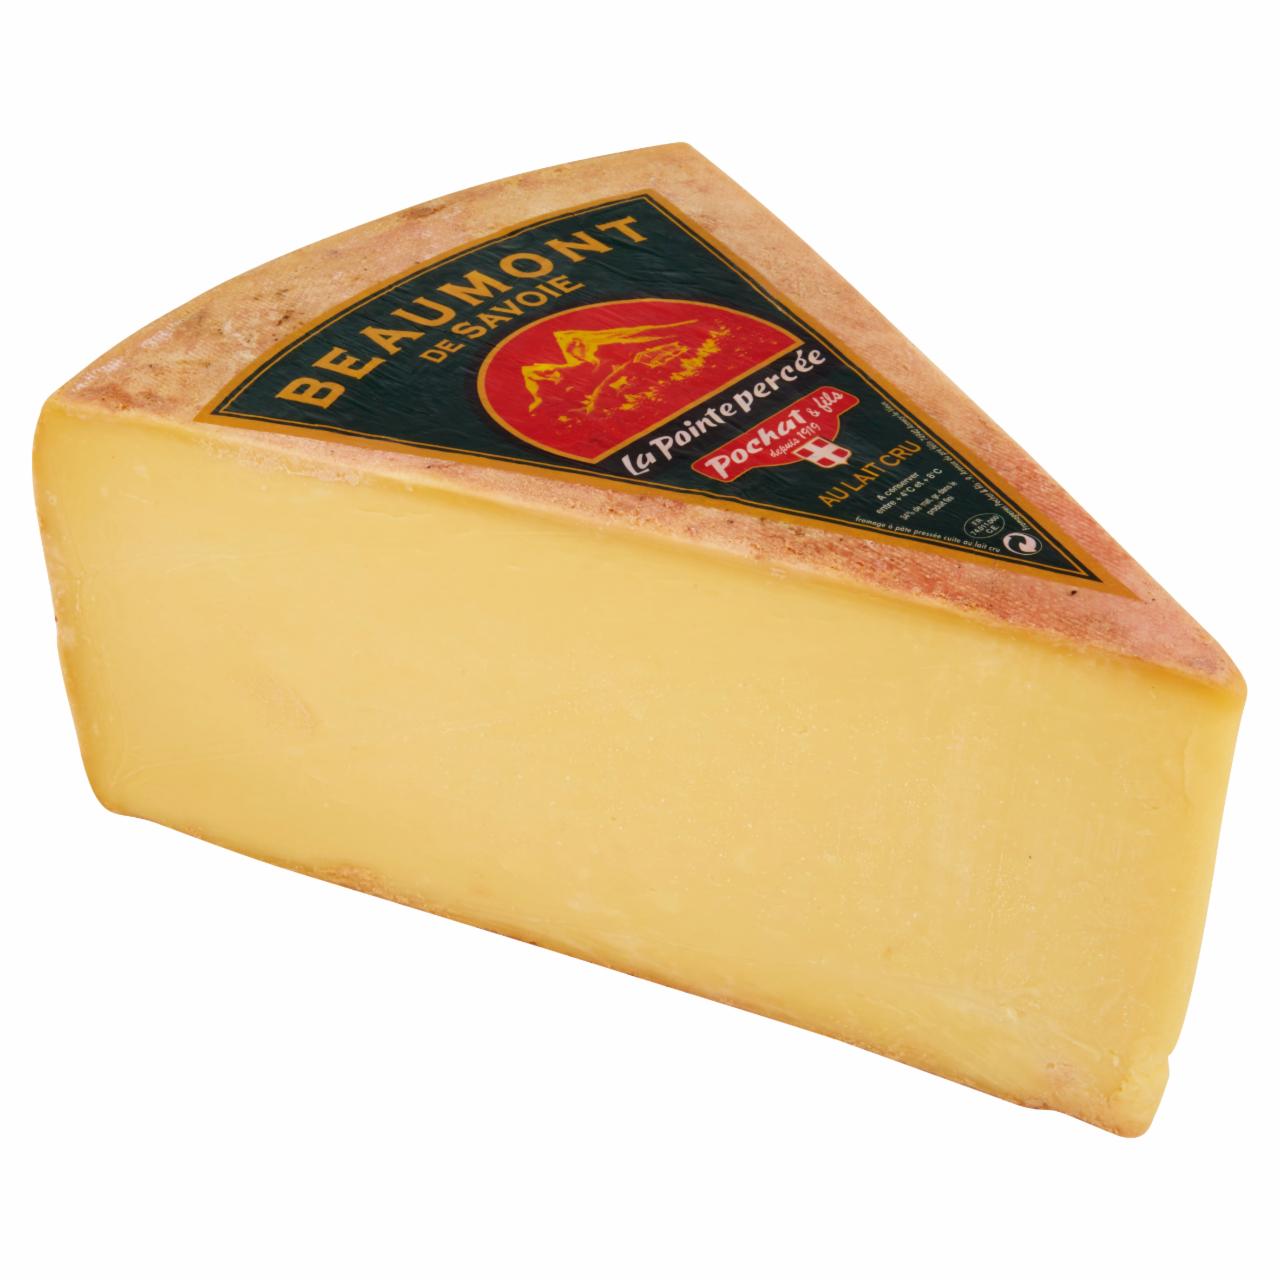 Képek - Beaumont de Savoie zsíros kemény sajt